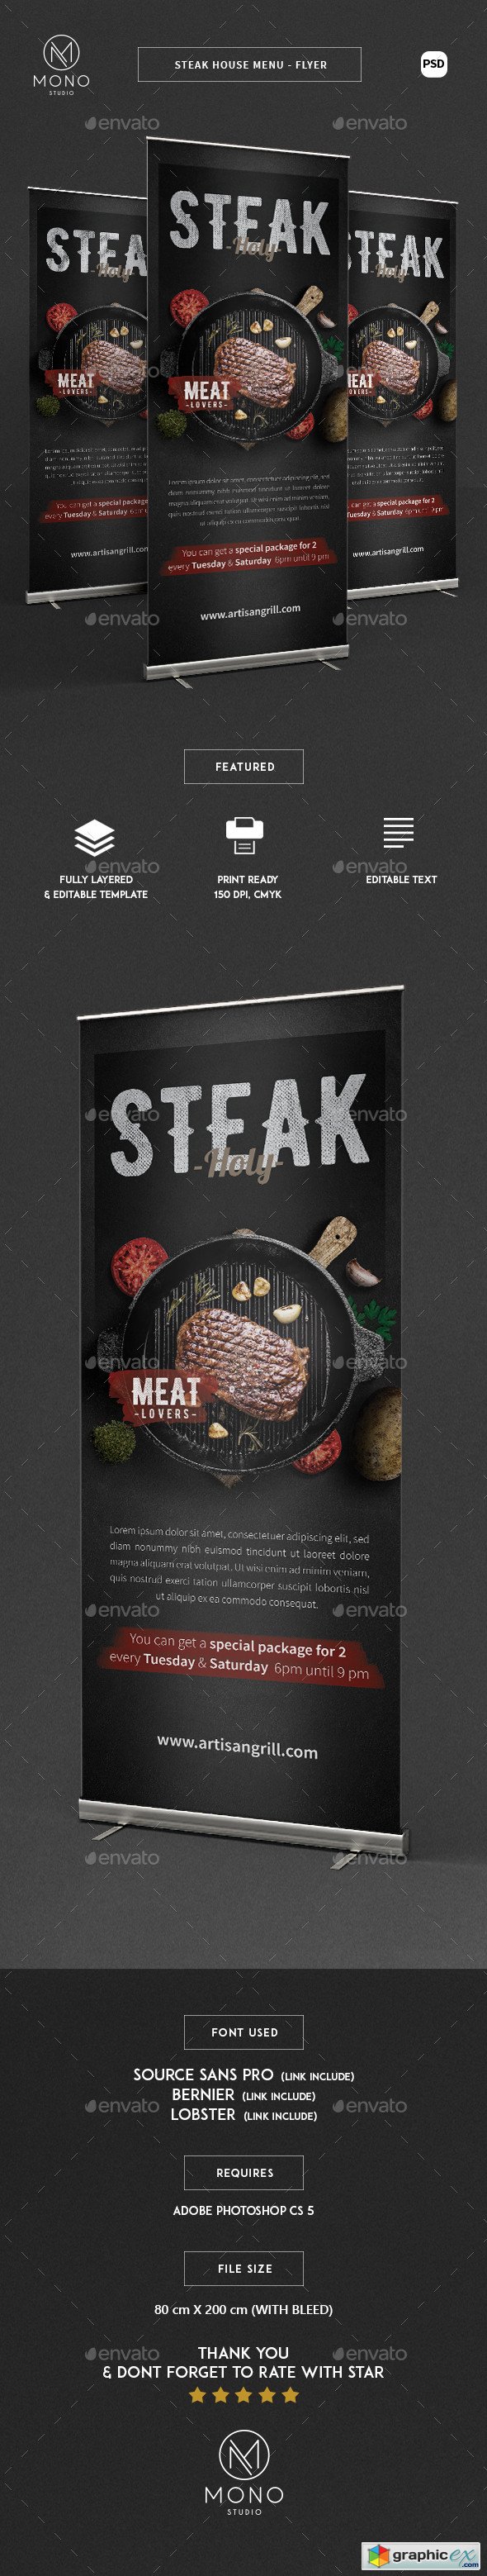 Steak House Roll Banner